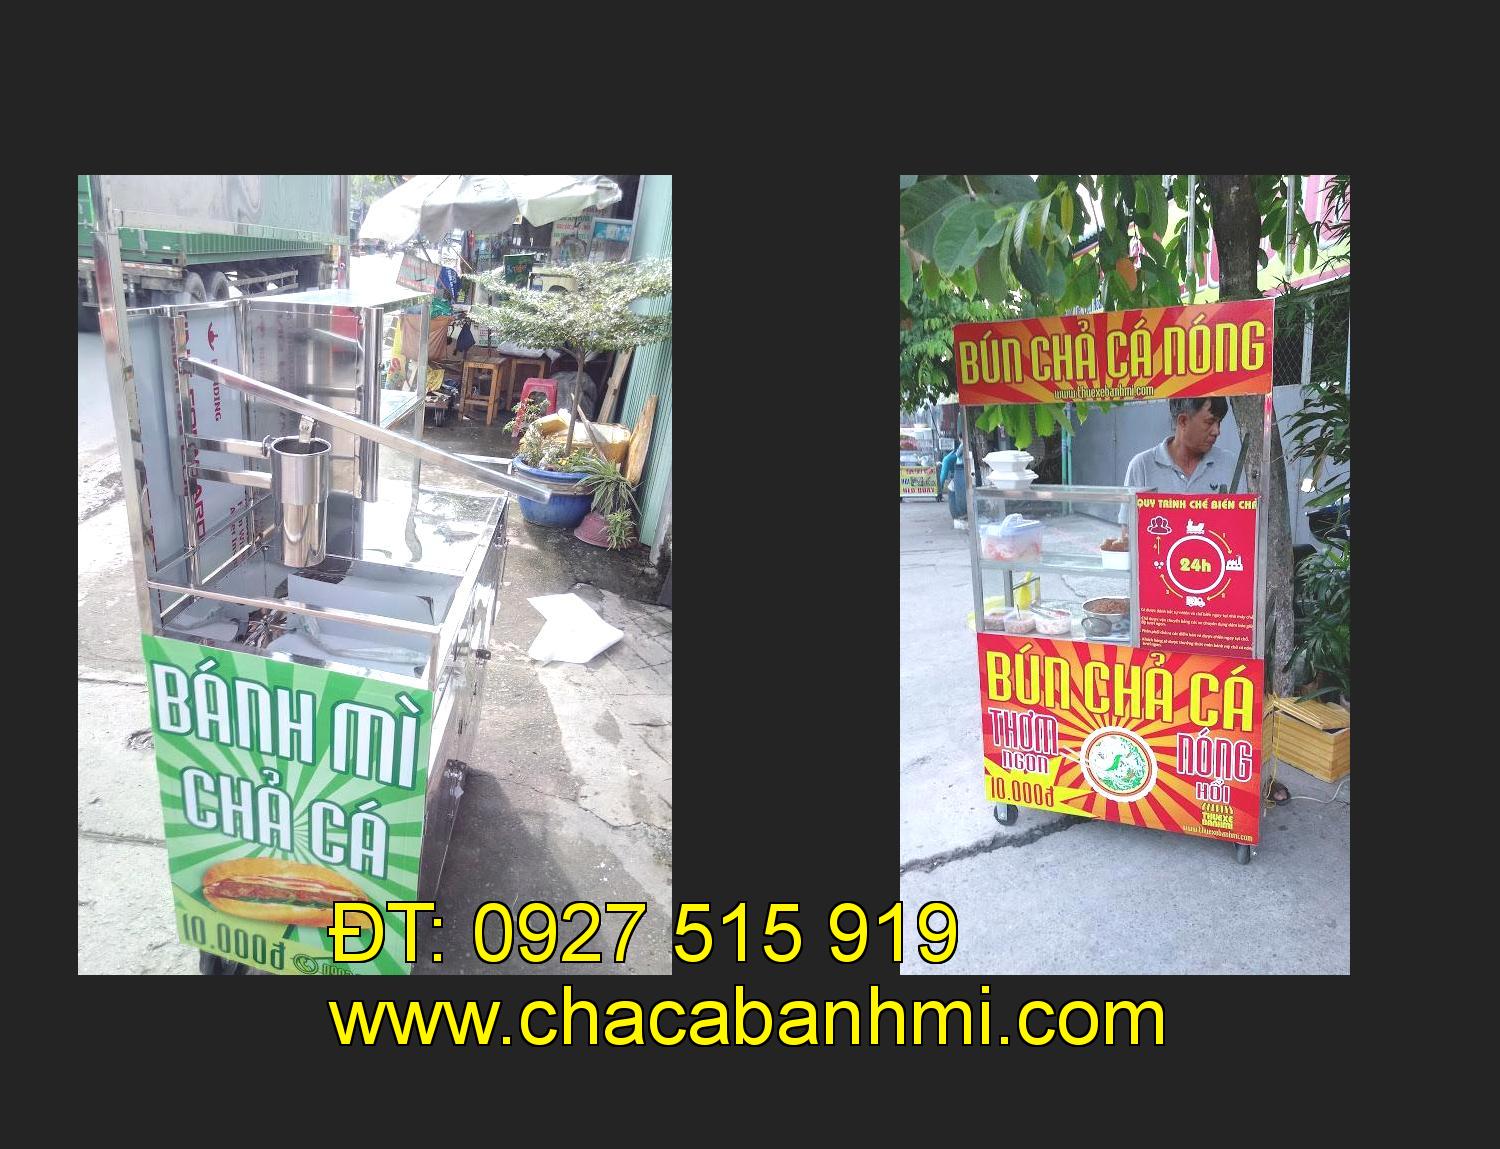 Bán xe bánh mì chả cá tại tỉnh Cà Mau